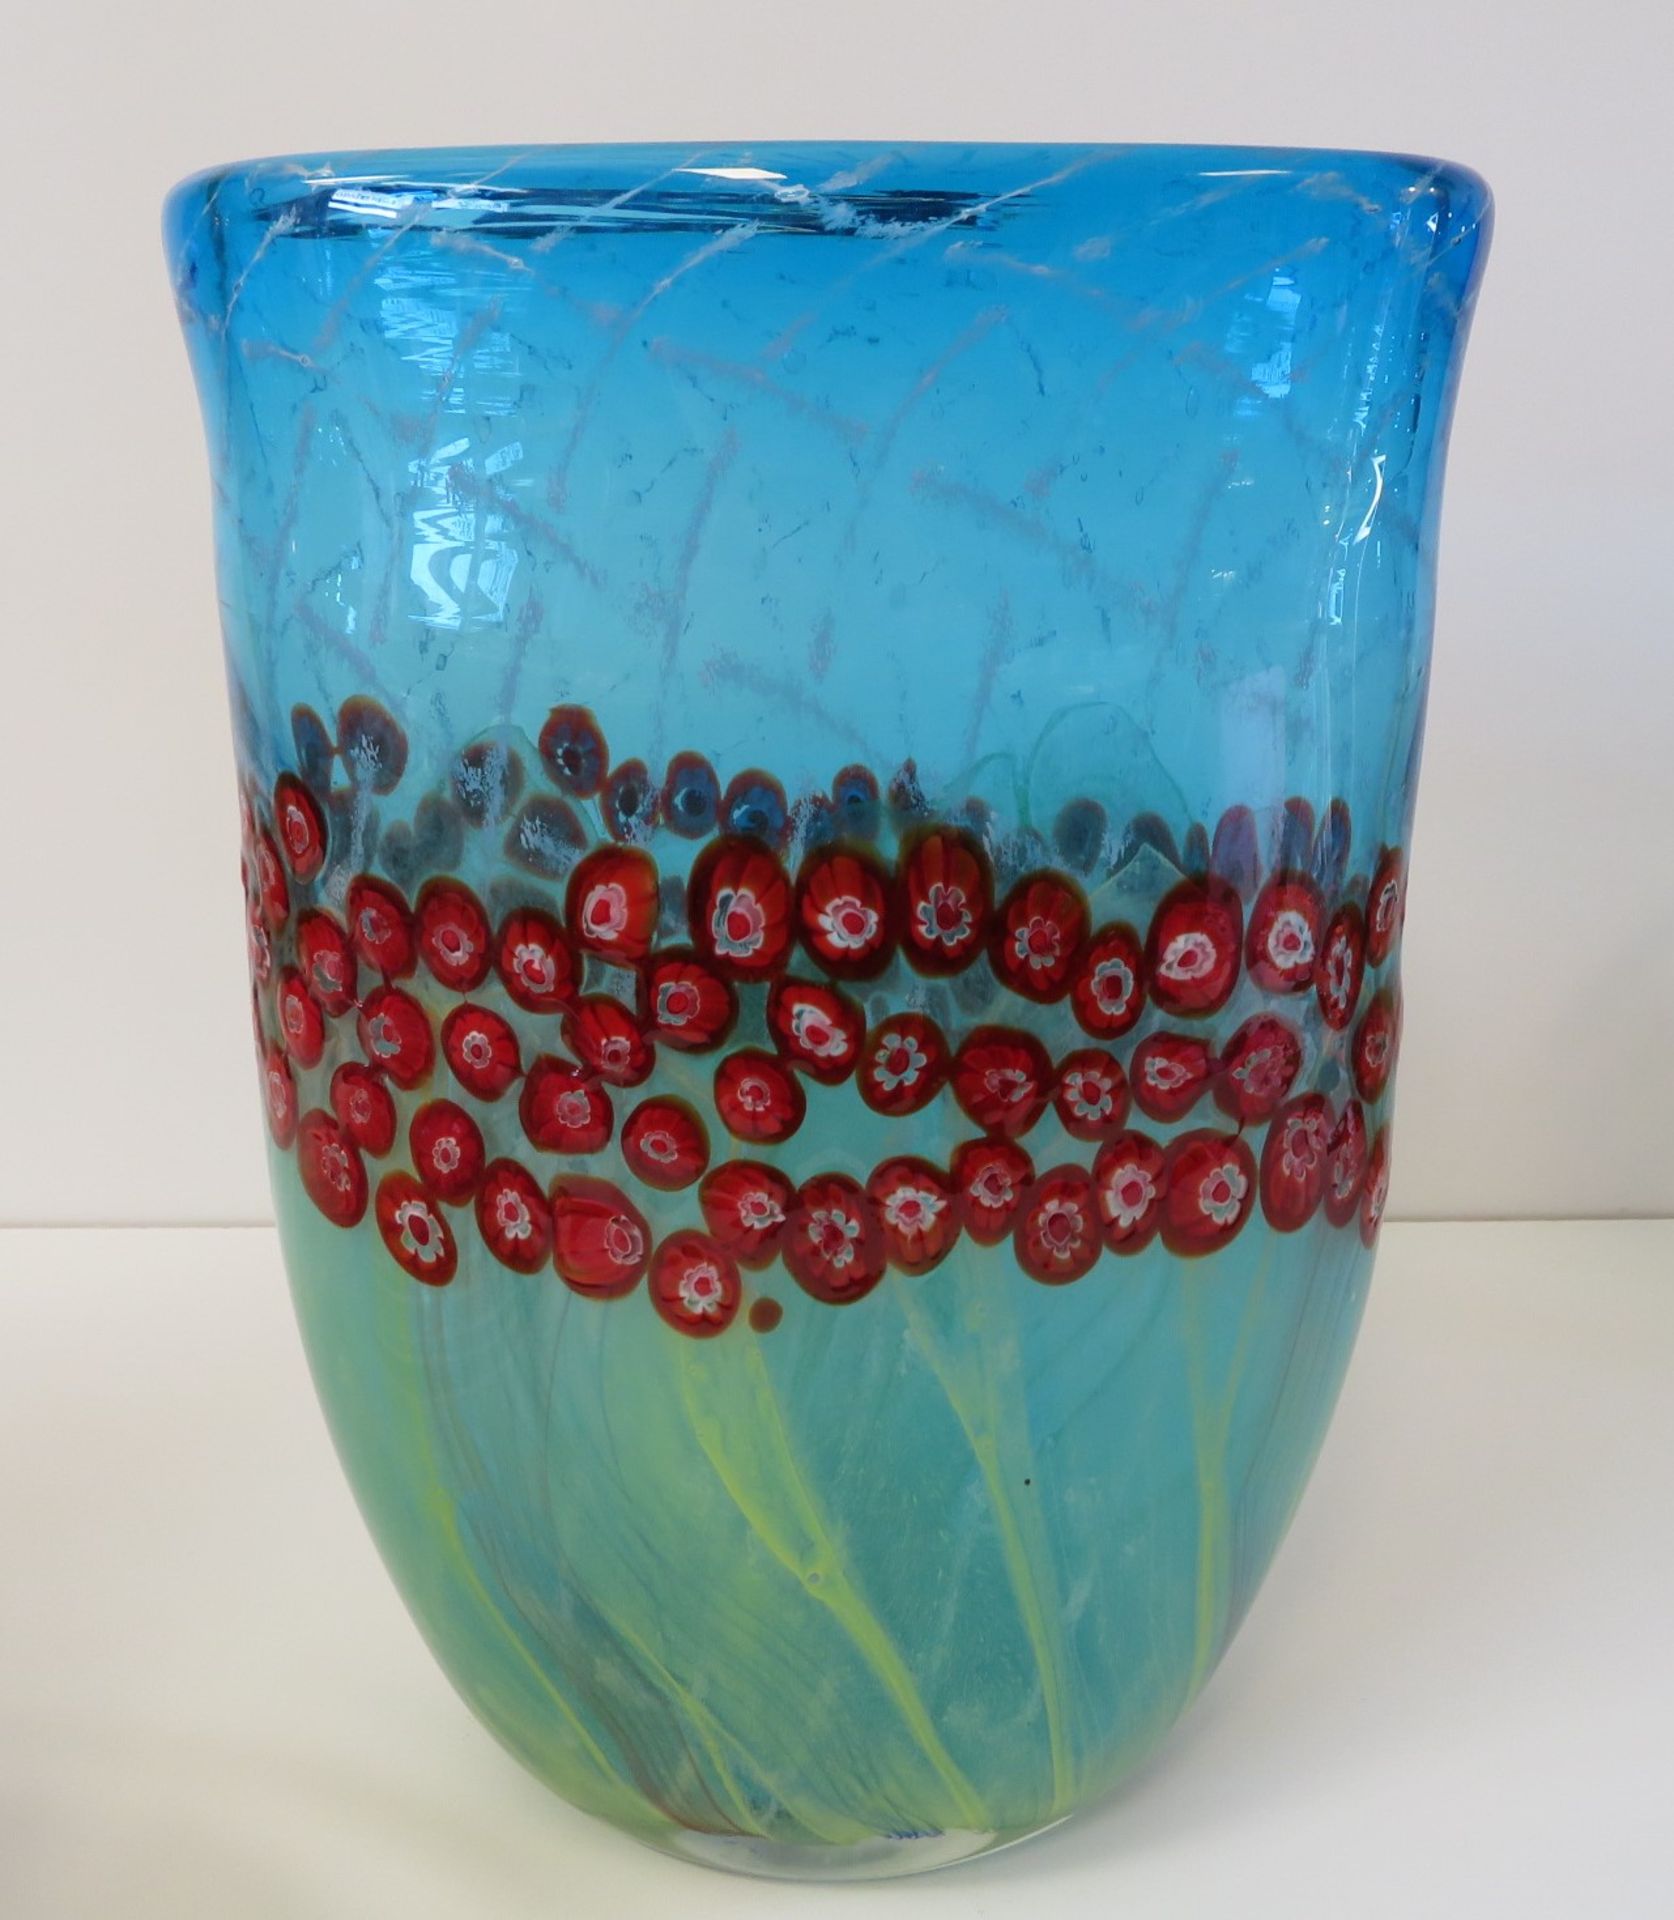 Große Designer Vase, Murano, grün-bläuliches Glas mit eingeschmolzenen roten Murinen, h 37 cm, d 26 - Bild 2 aus 2